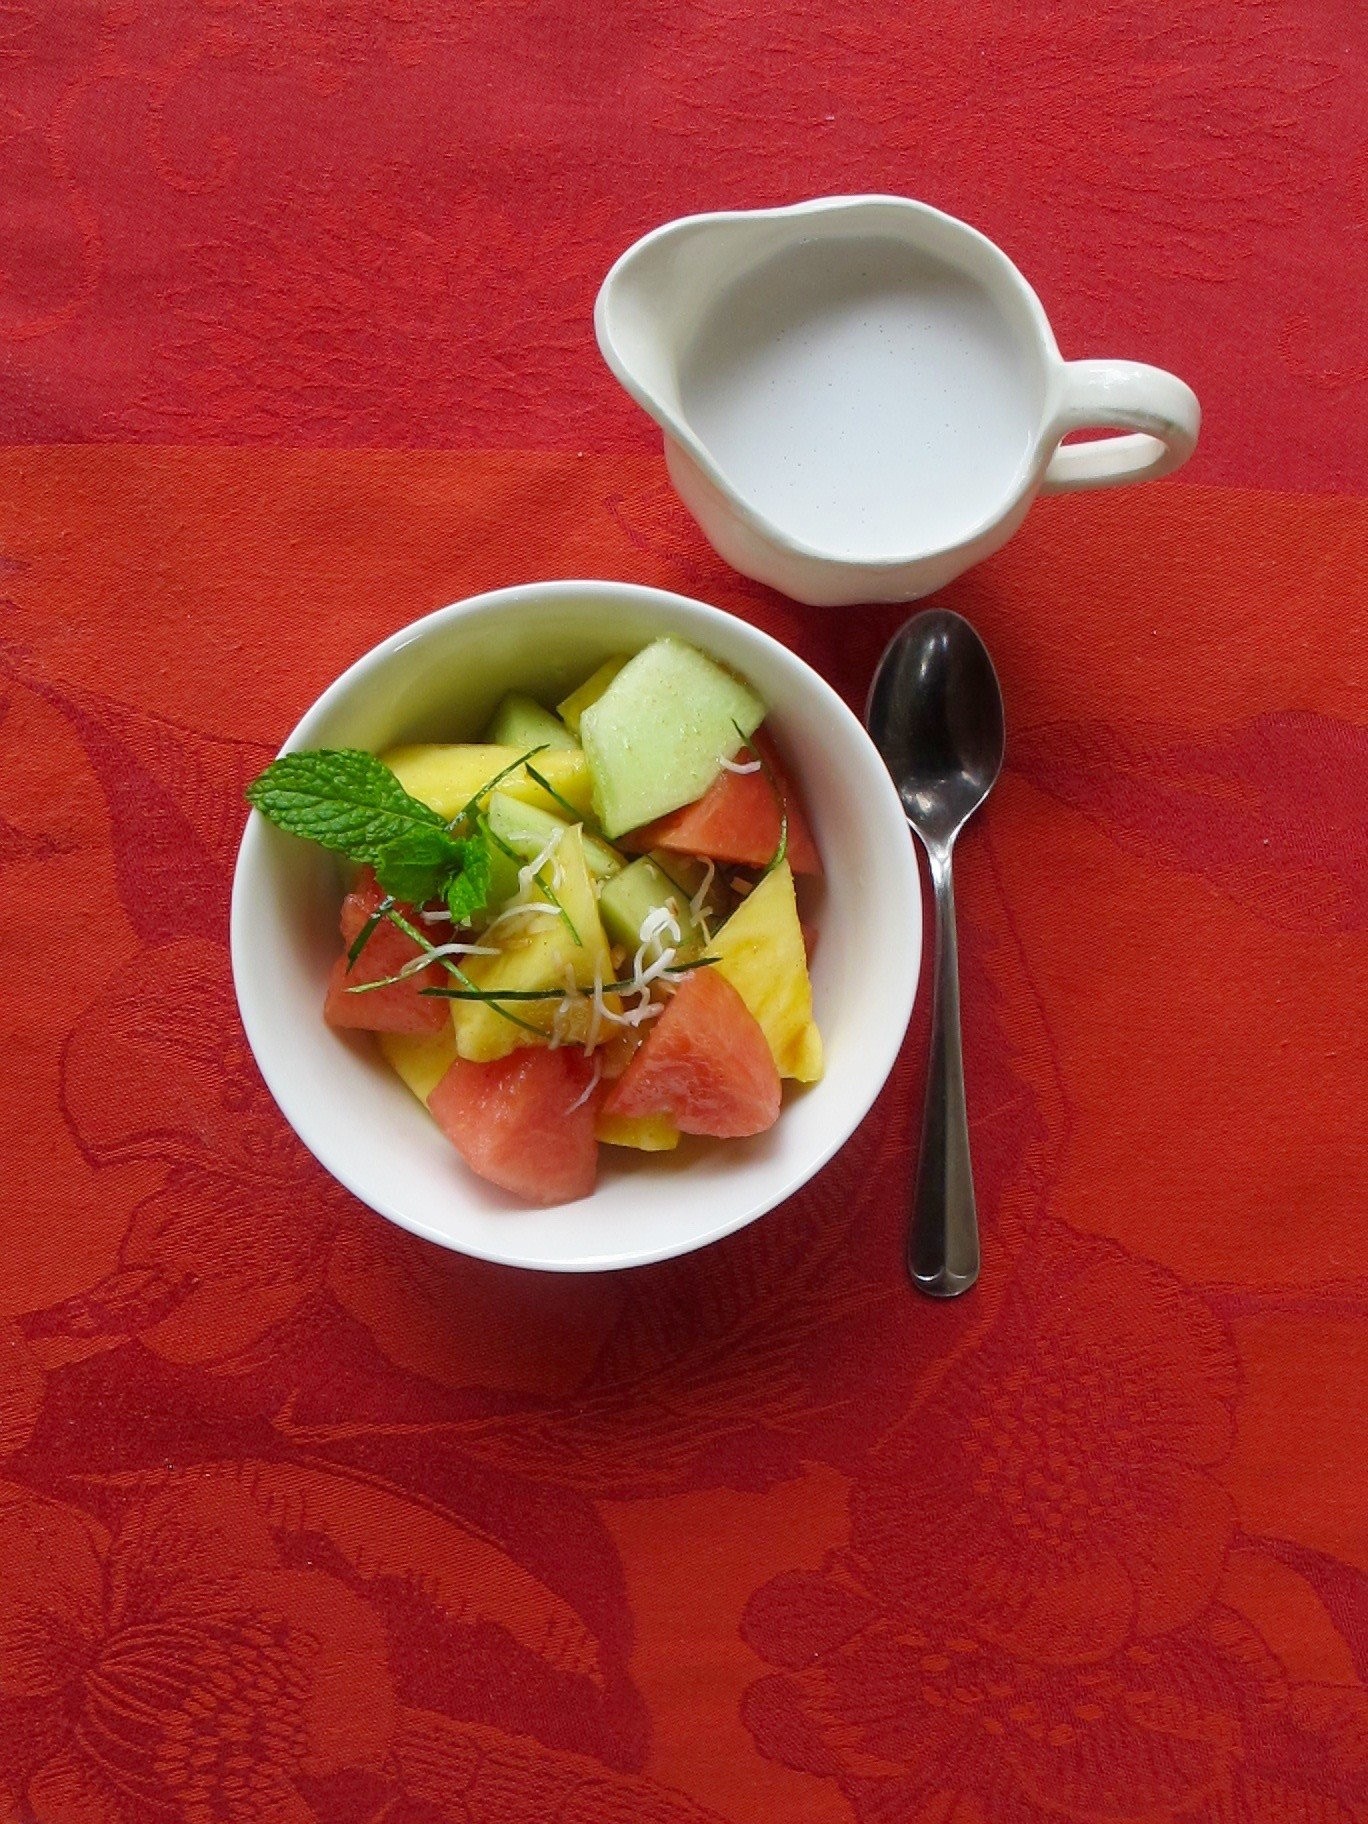 4-bangkok-fruit-salad.jpg